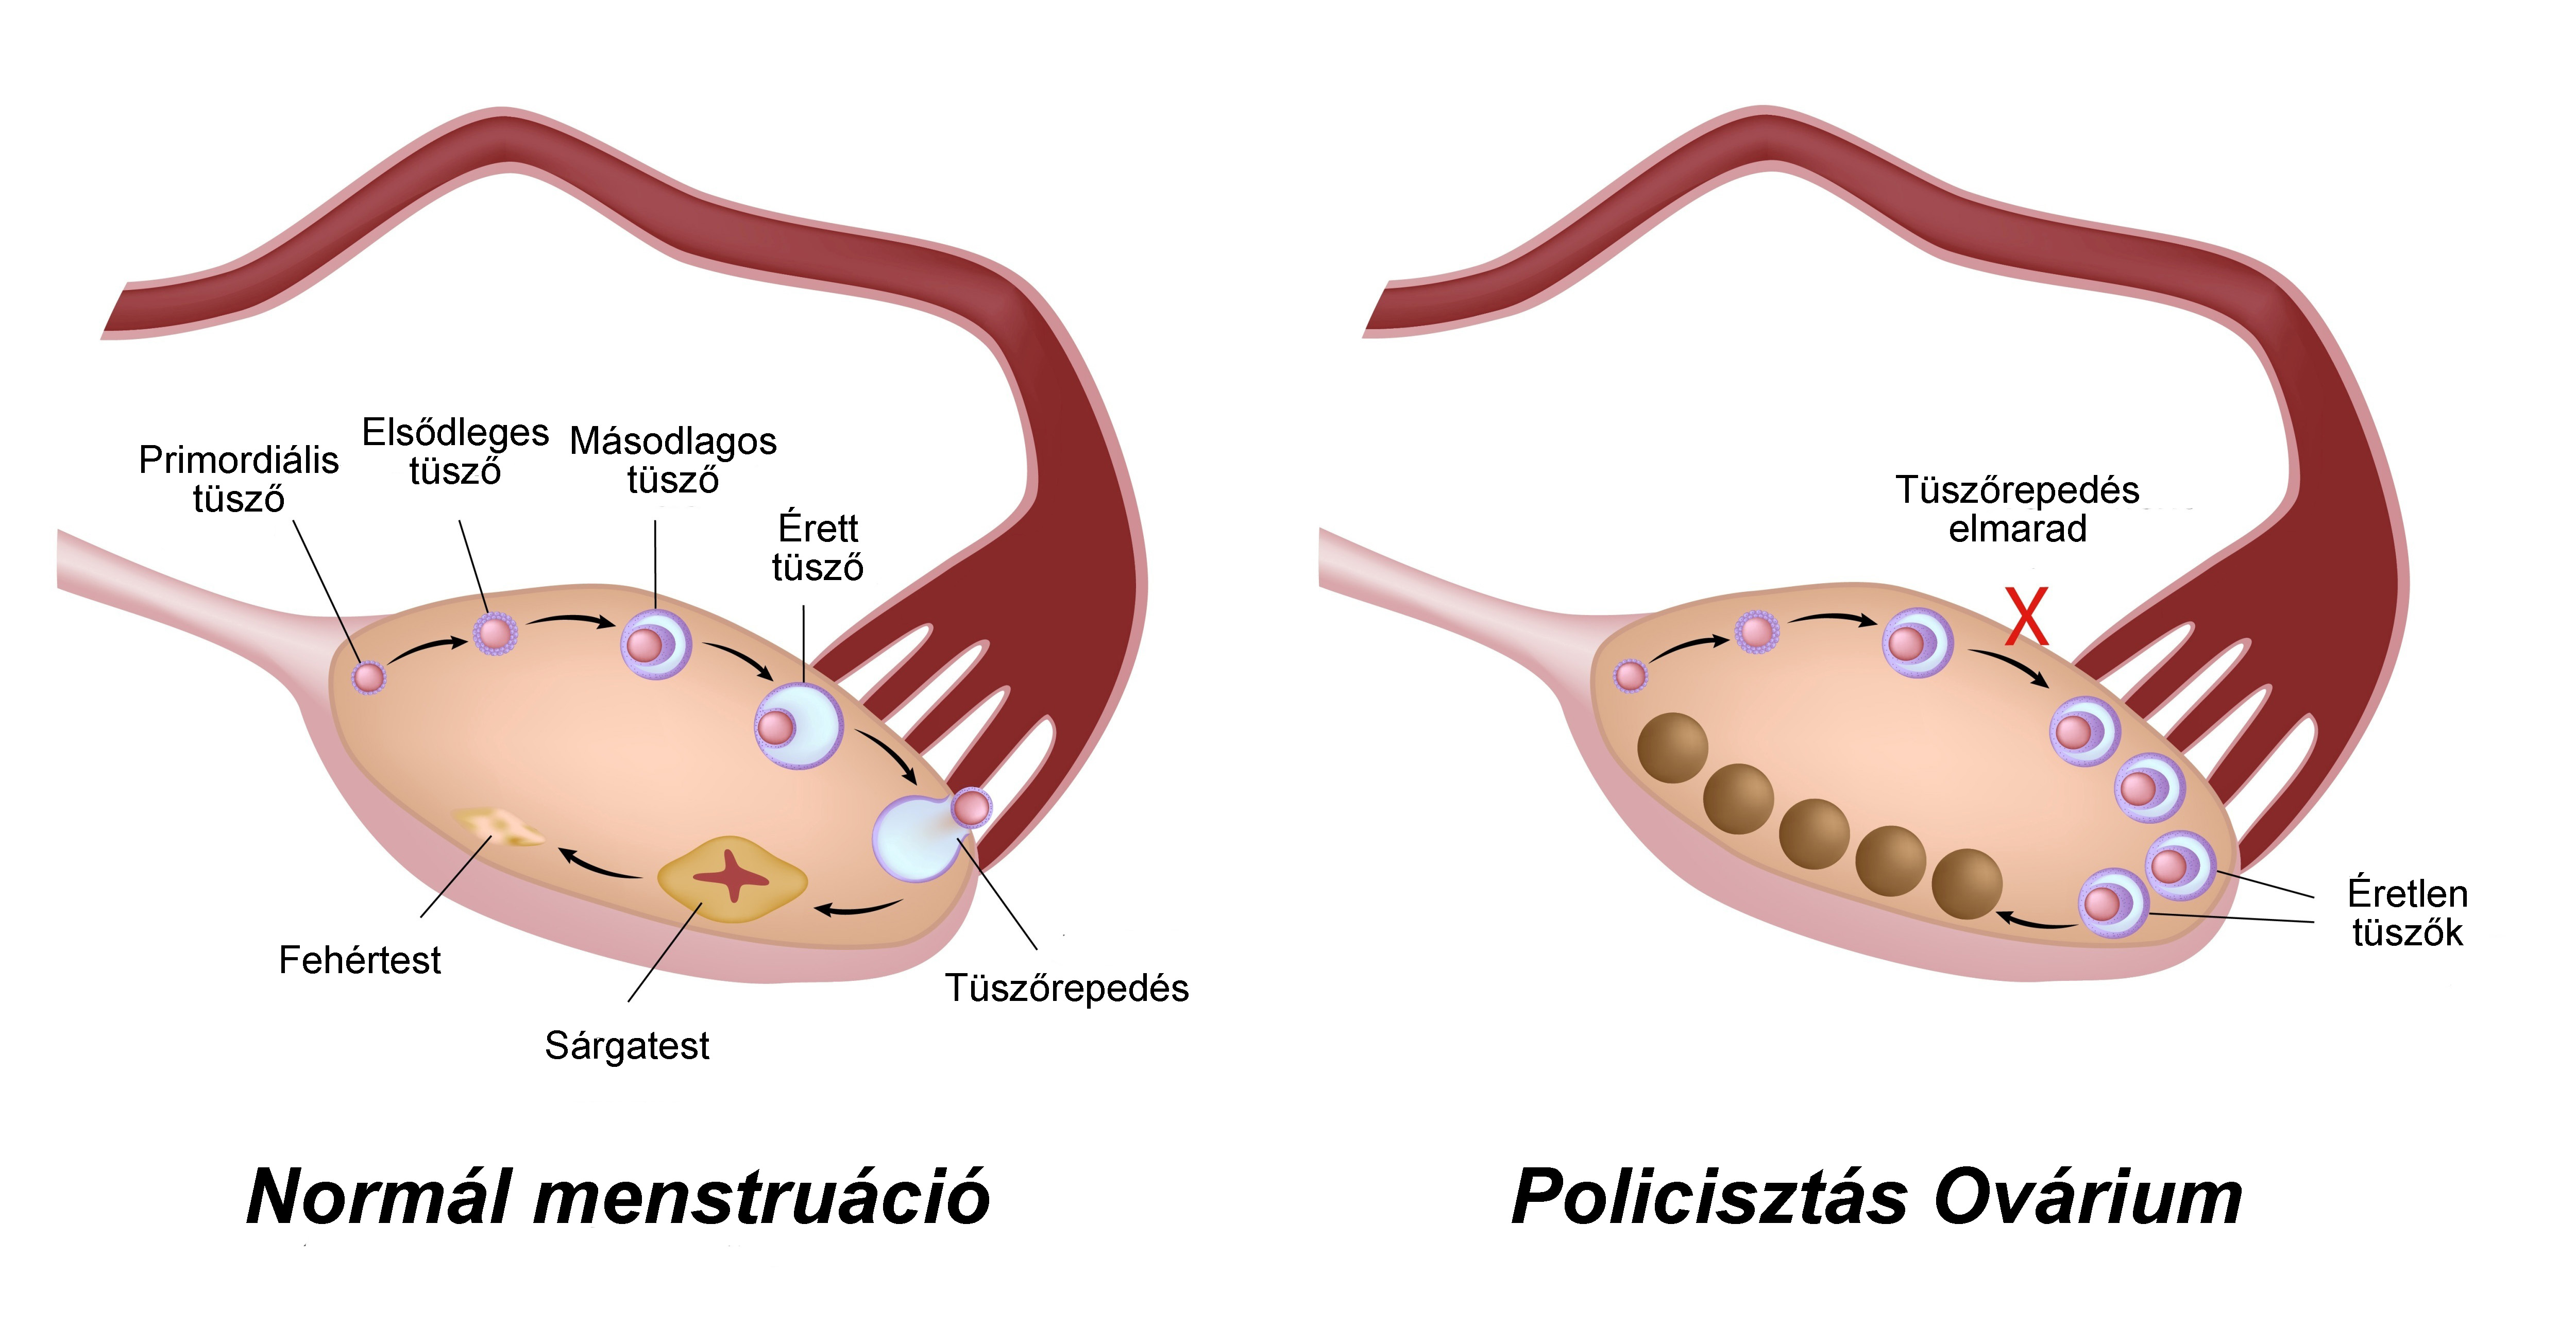 Ovario poliquistico y fertilidad